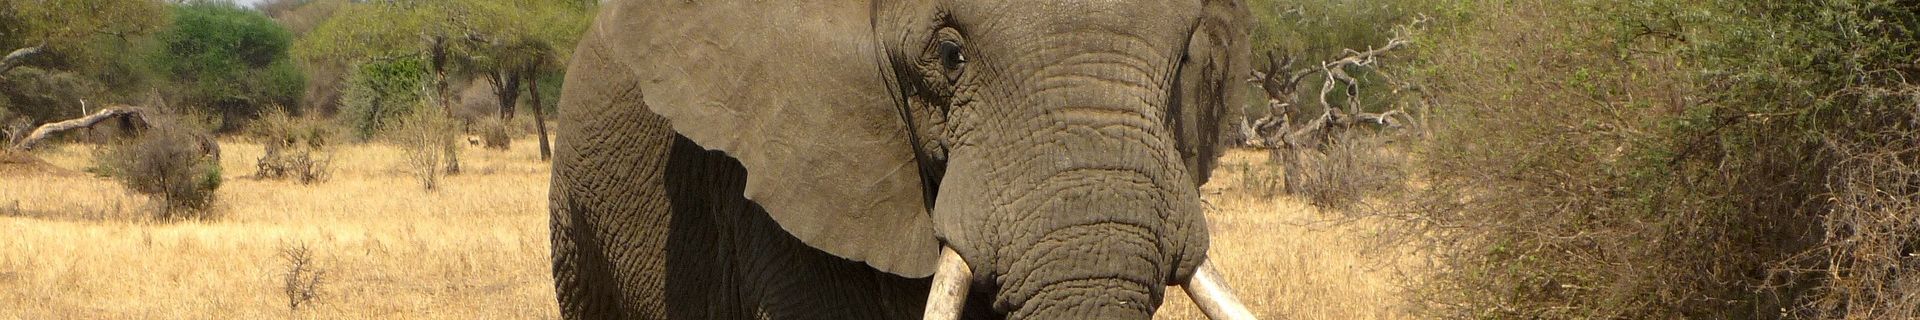 Elefant in der Trockenzeit (Tansania)